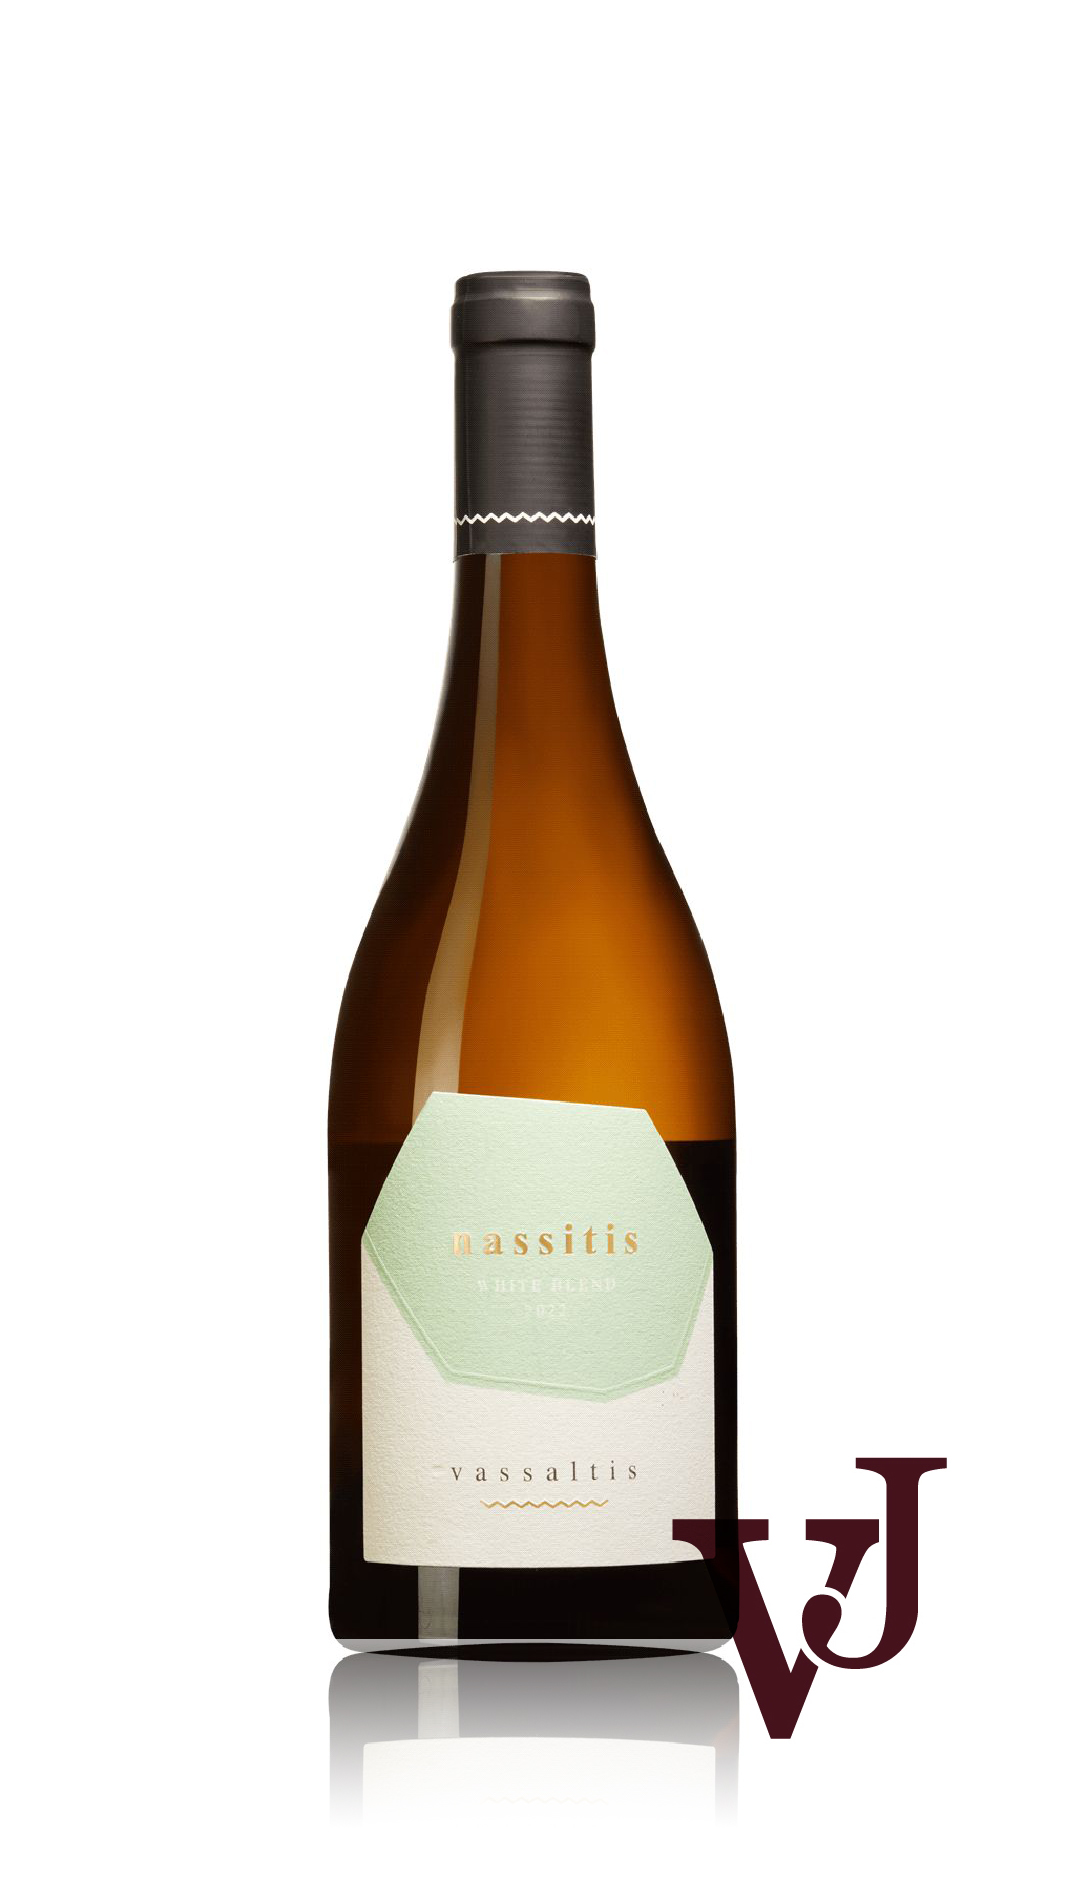 Vitt vin - Nassitis Vassaltis 2022 artikel nummer 9466501 från producenten Vassaltis från Grekland.